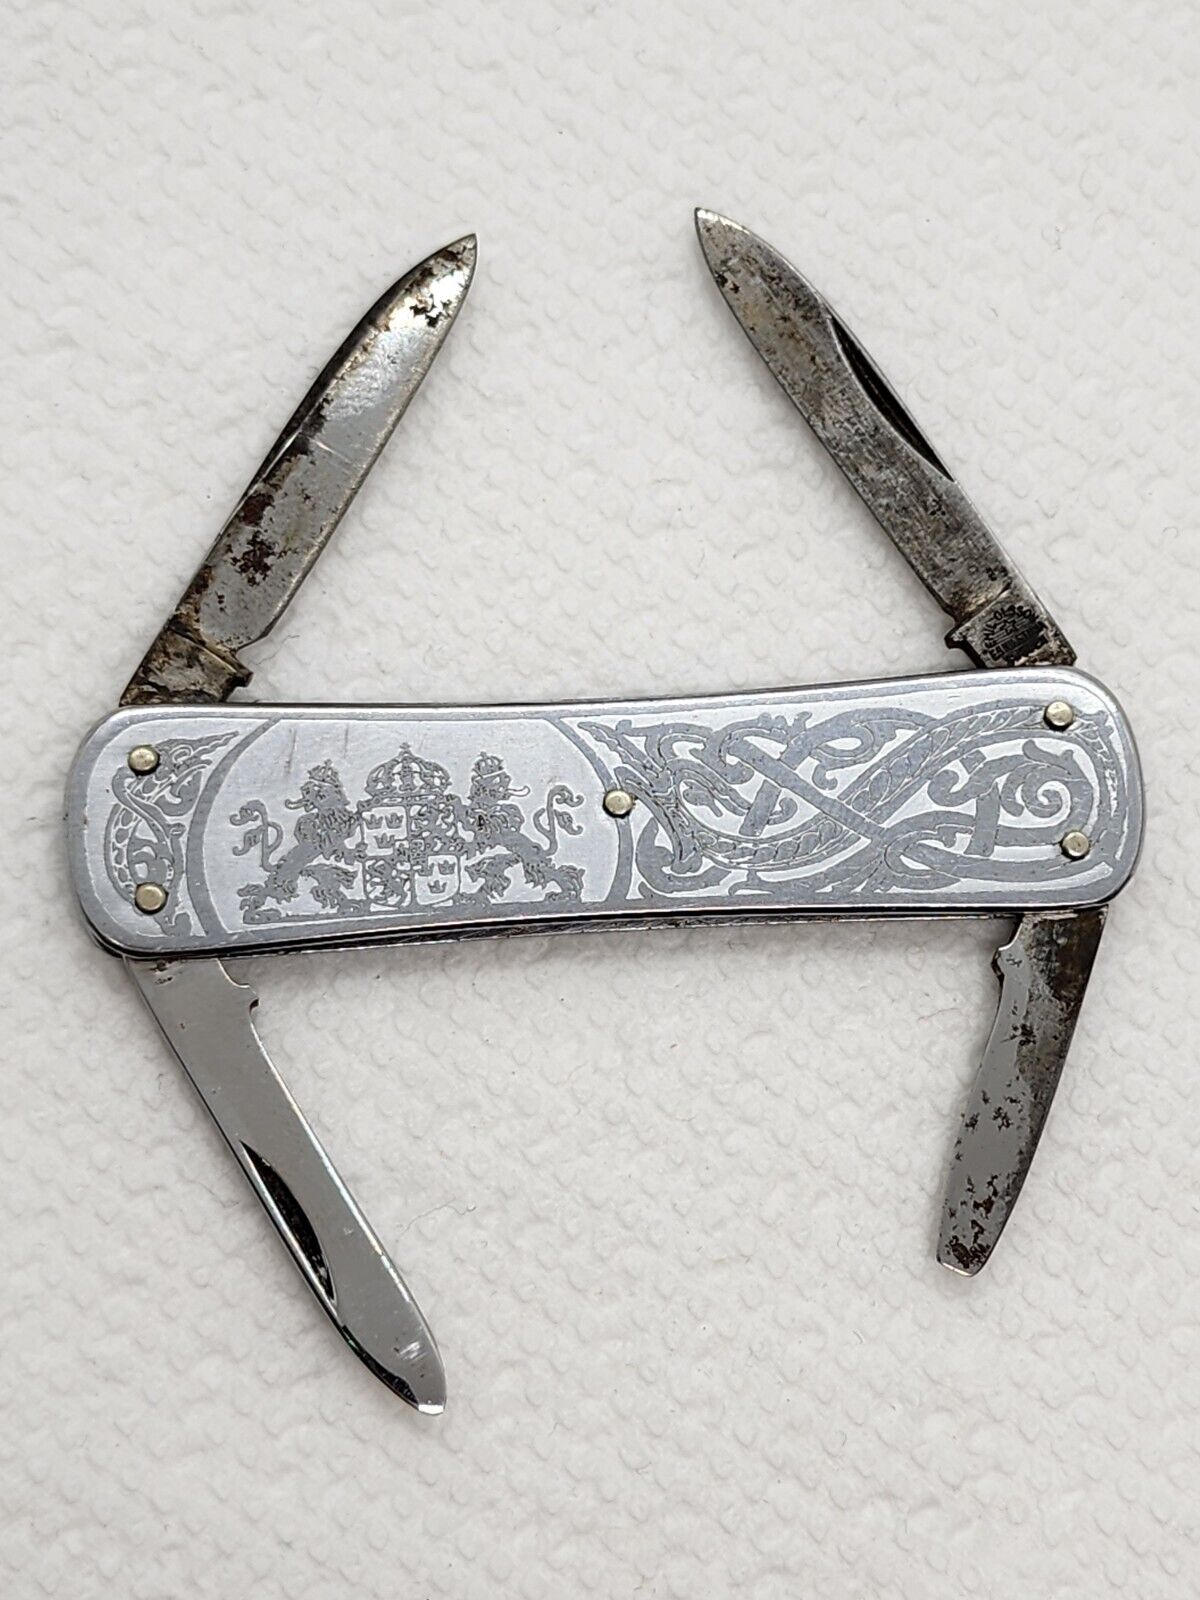 Antique Emil Olsson Eskilstuna Sweden Lion Crest Serpent Pocket Knife Multi Tool